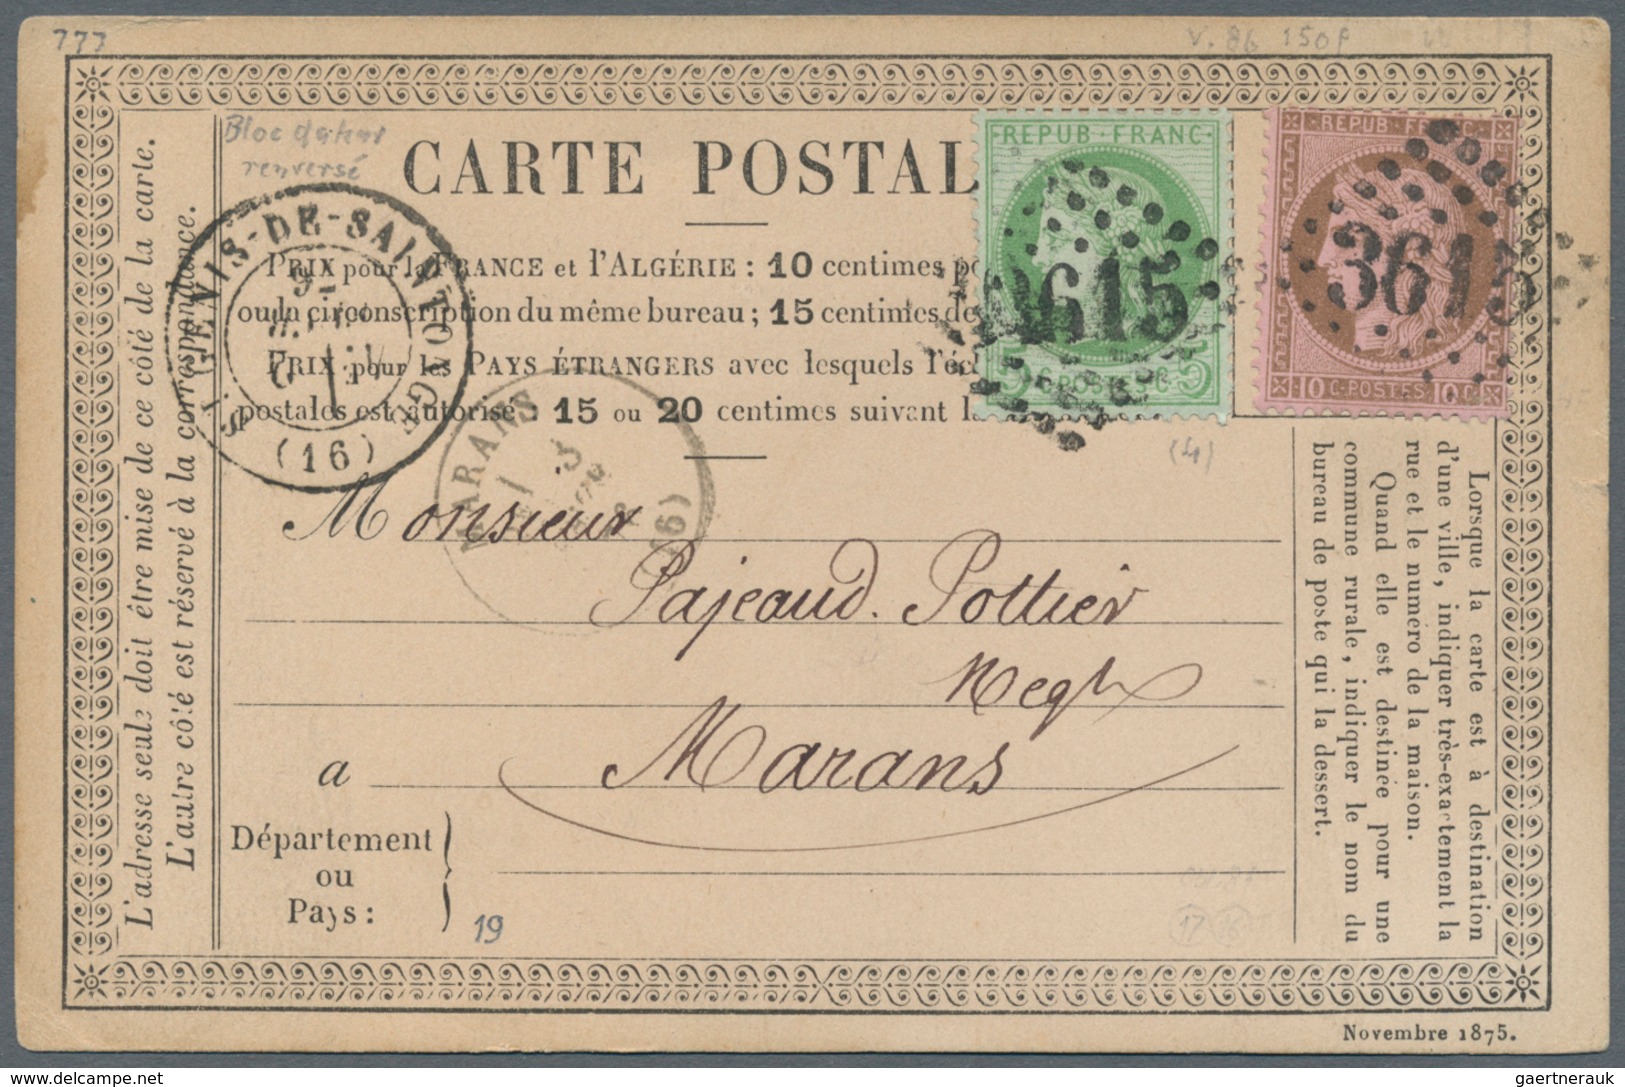 Frankreich: 1798/1876, schöner kleiner Bestand von Vorphilabriefen sowie Ceres und Napoleon-Frankatu